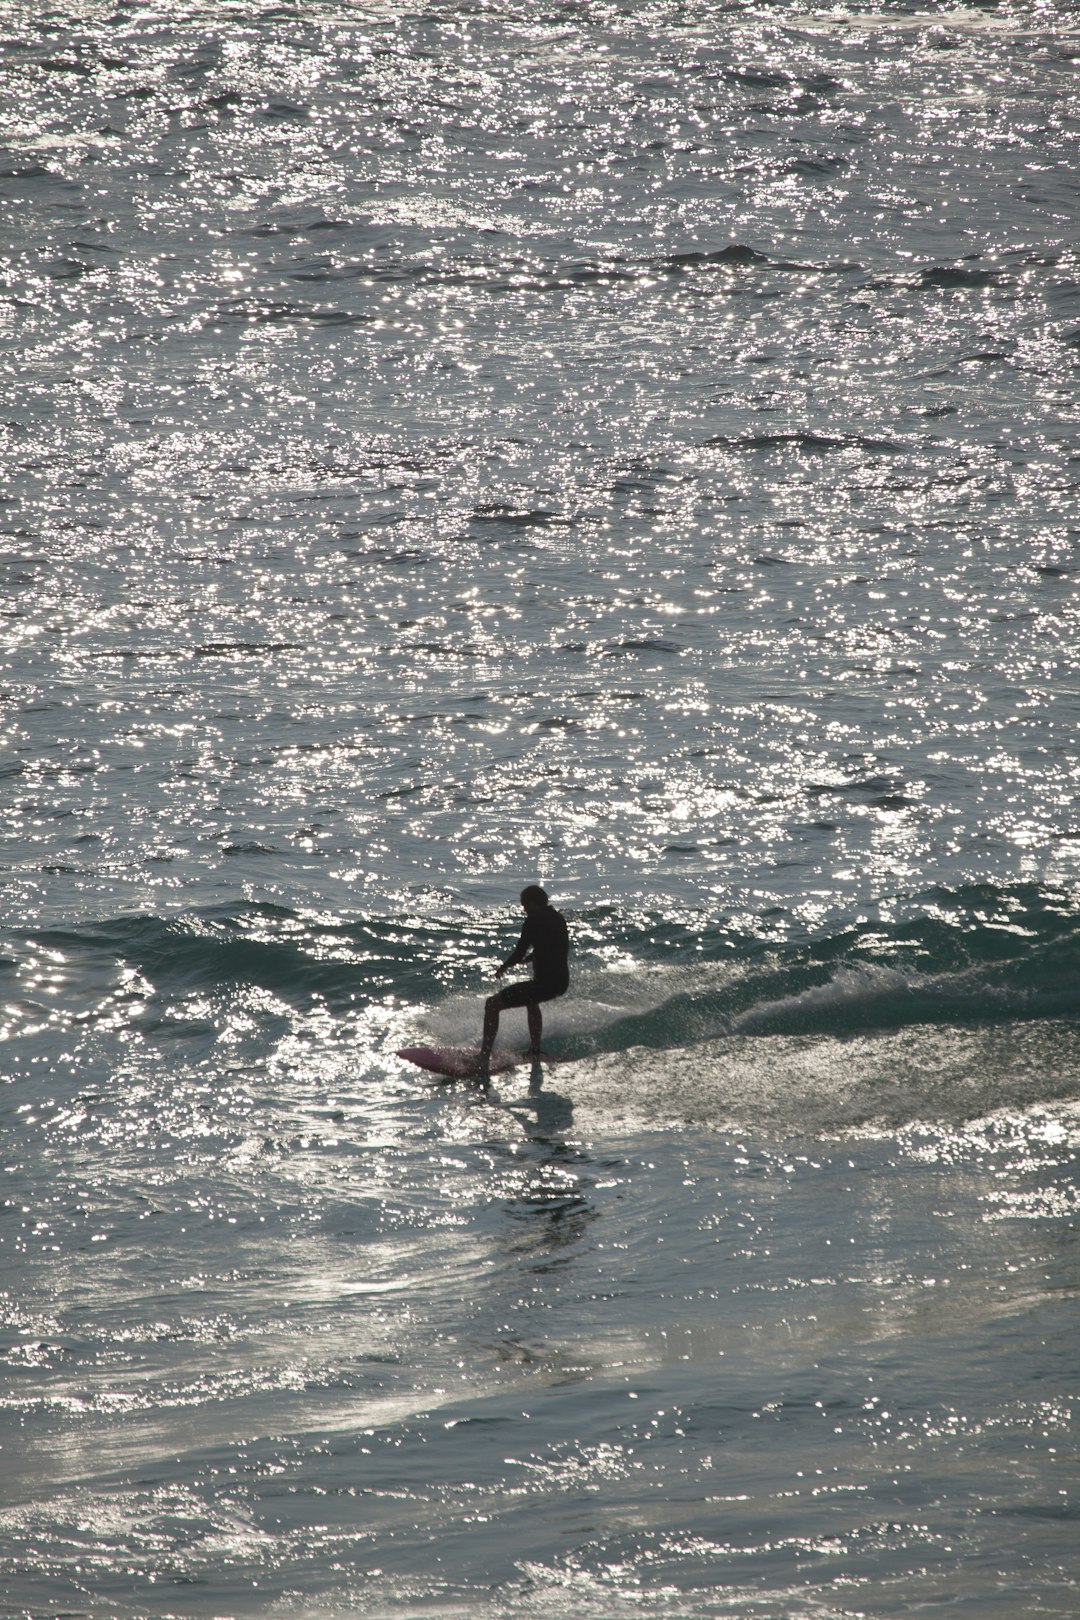 Surfing photo spot Tamarama Beach Cronulla NSW